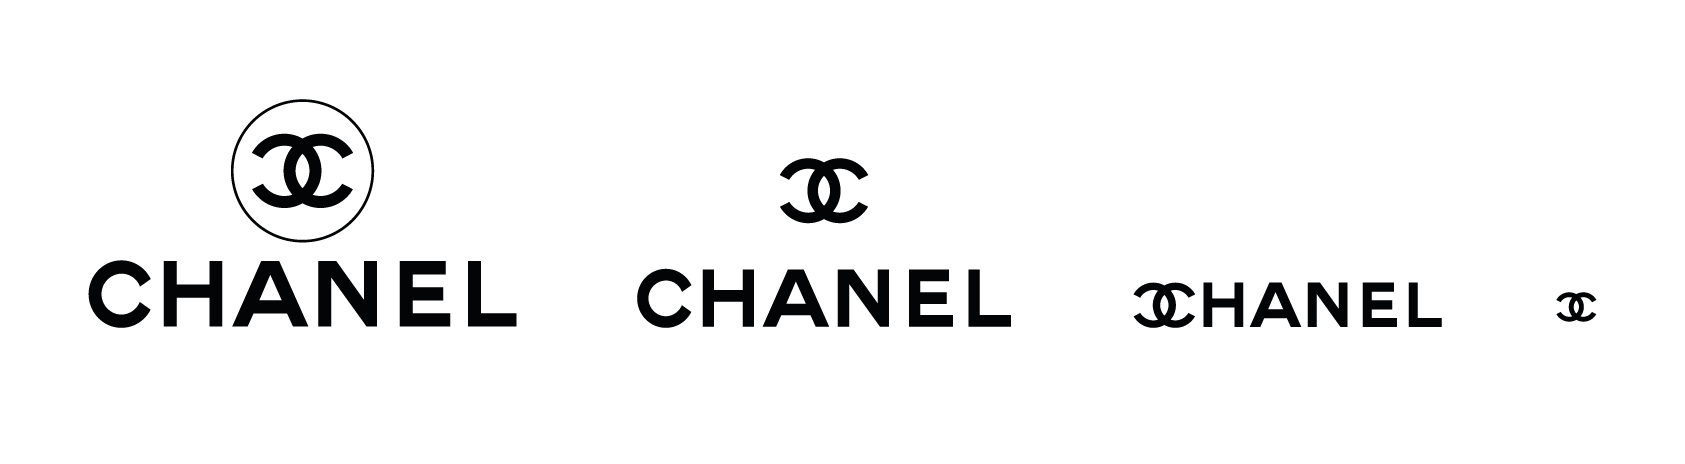 Isólo de Chanel: cómo diseñar un logo